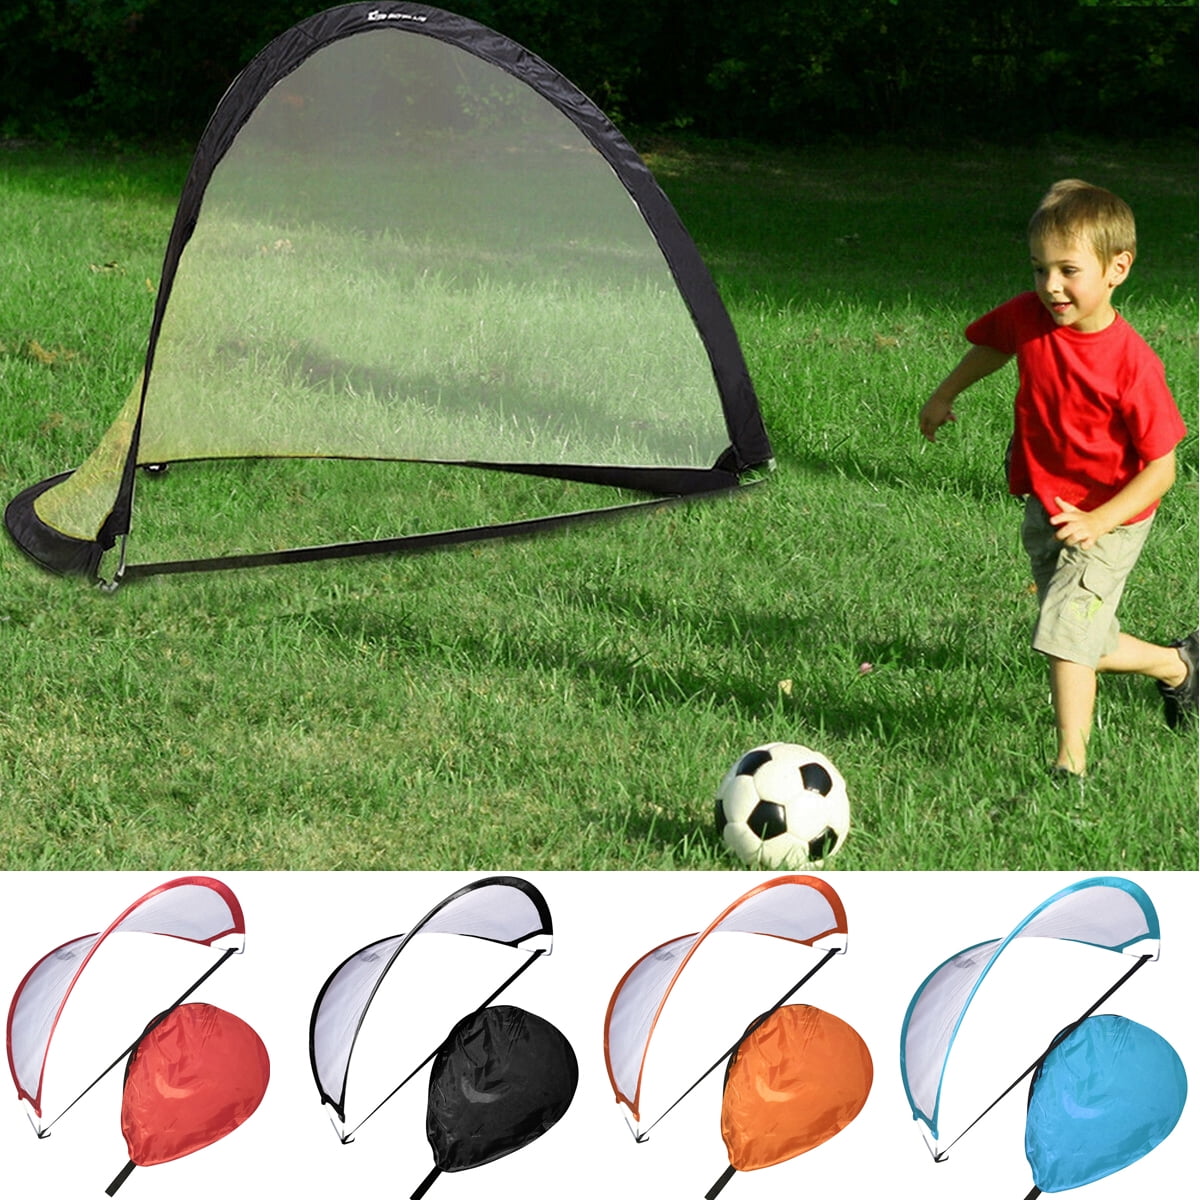 2PCS Kids Childs Football Training Soccer PopUp Goal Post Net Outdoor Garden Toy 